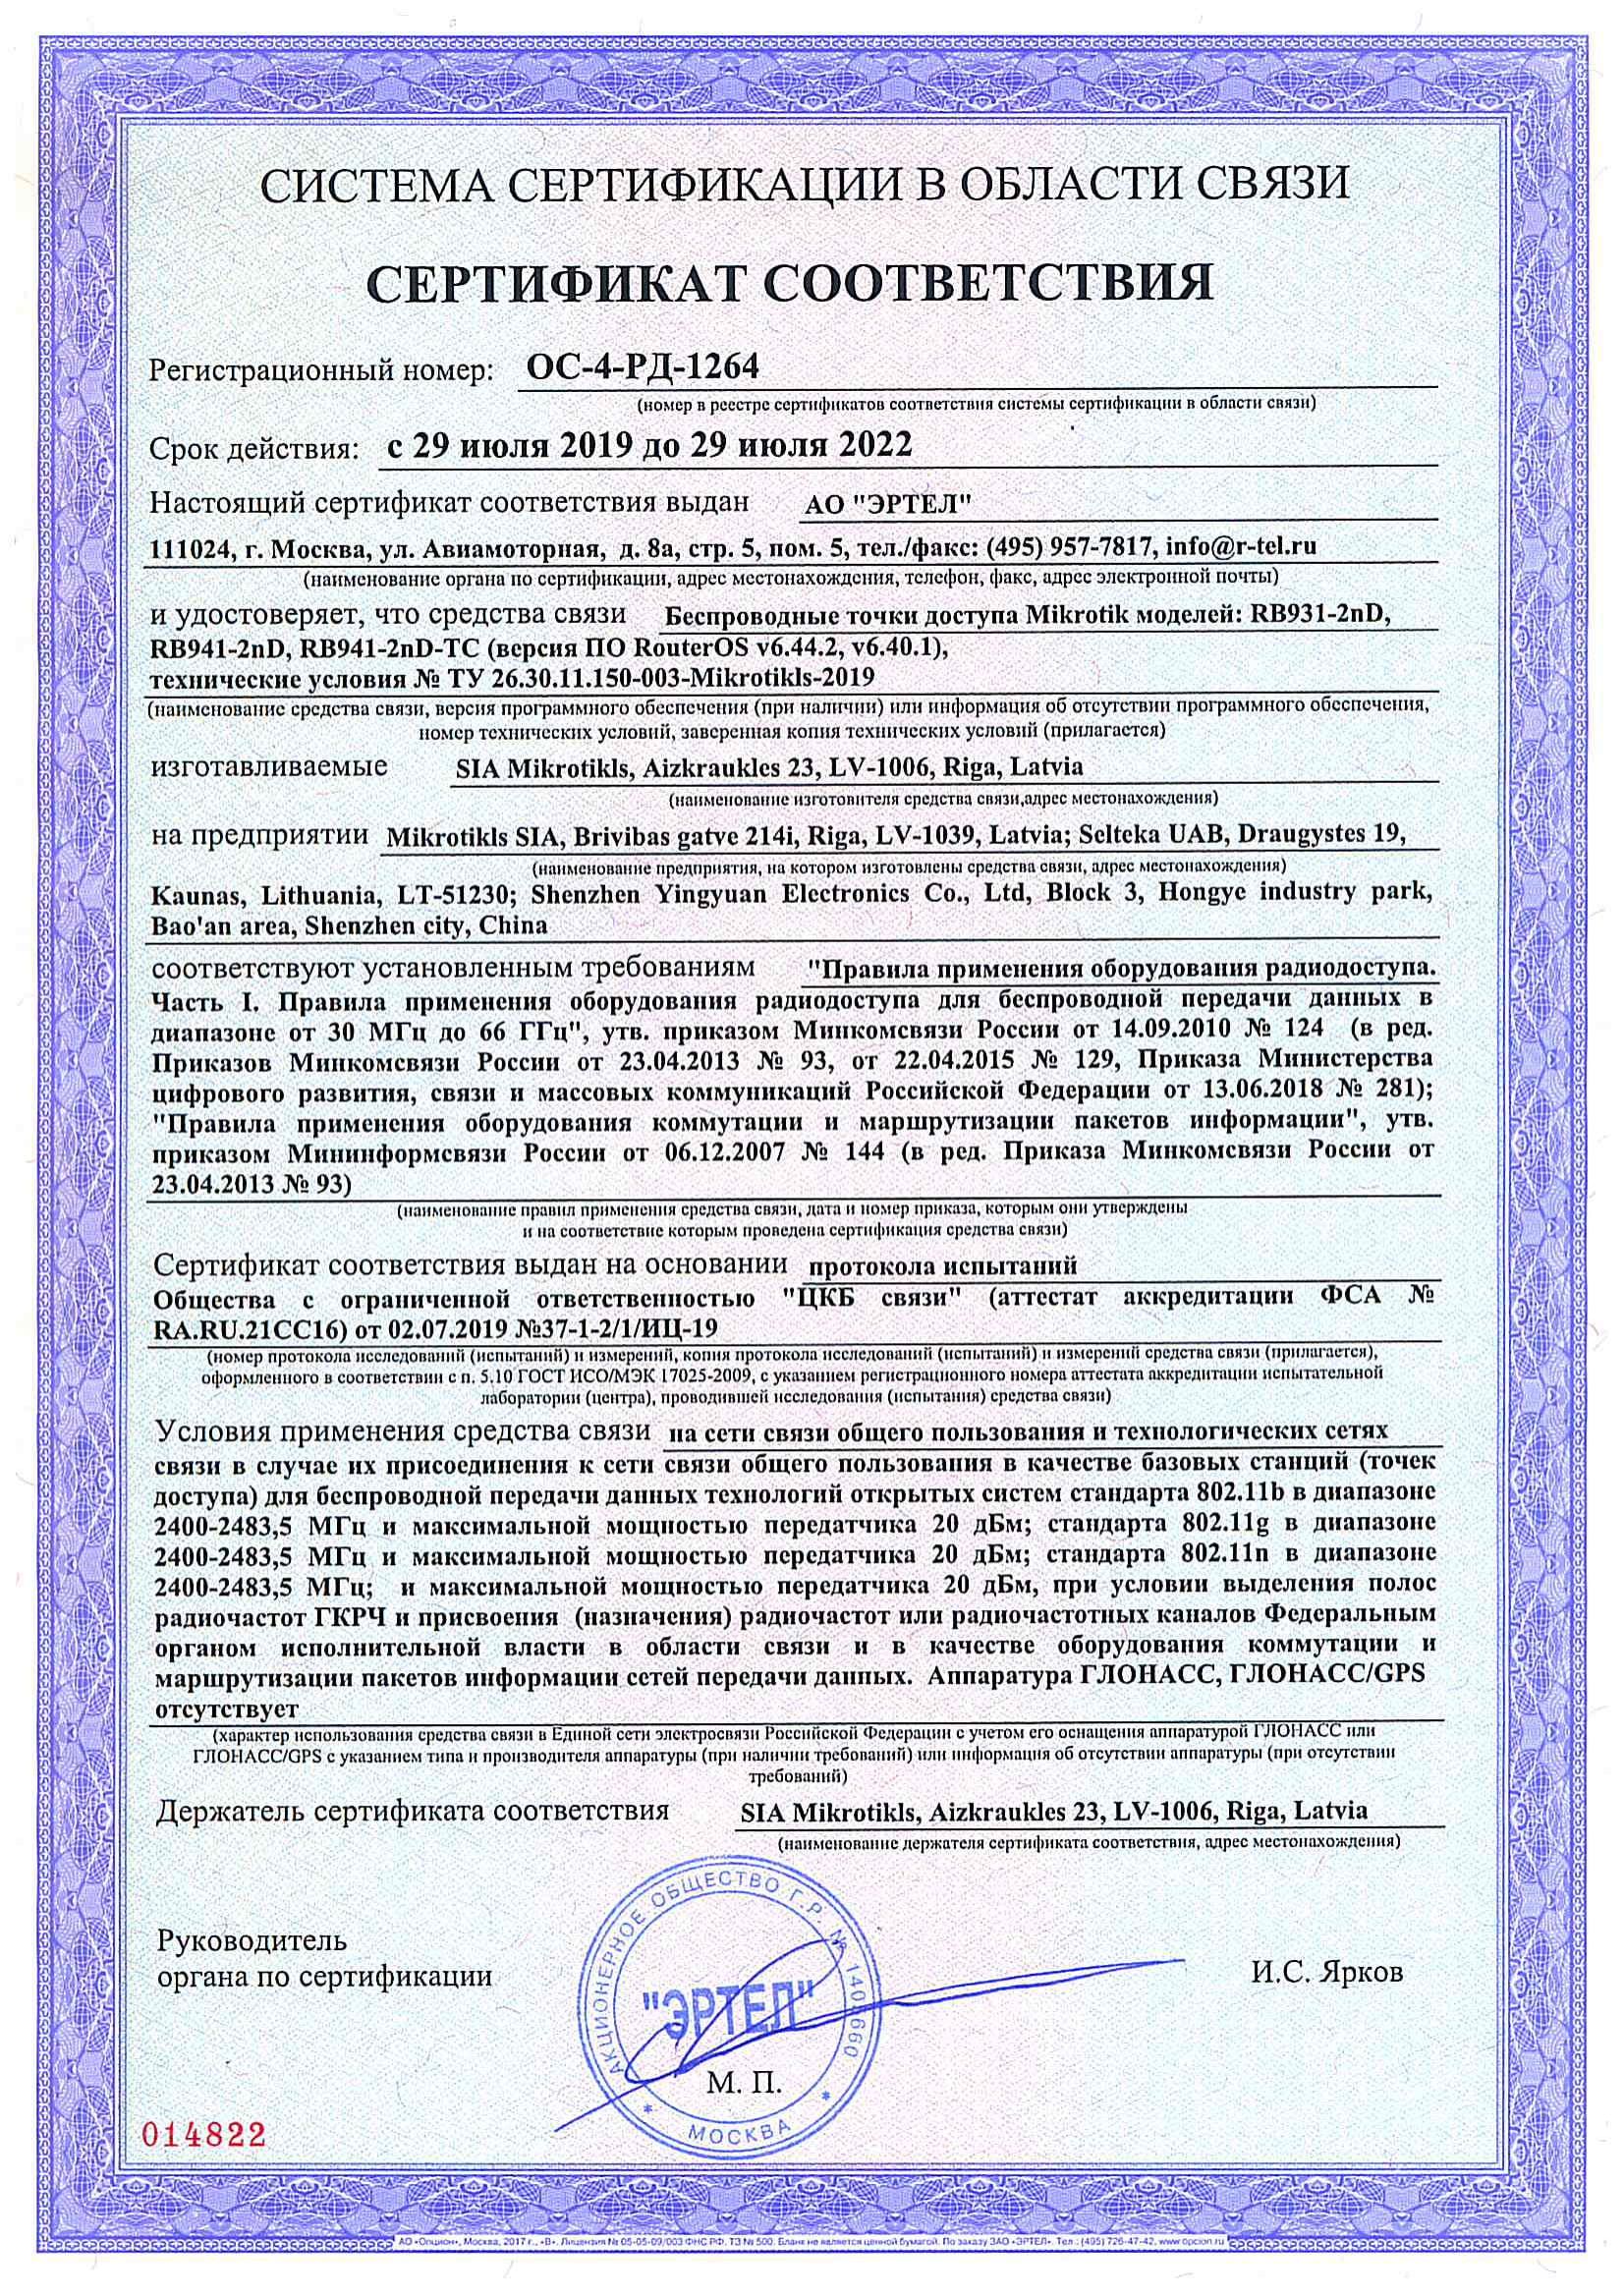 Сертификат соответствия в области связи ОС-4-РД-1264